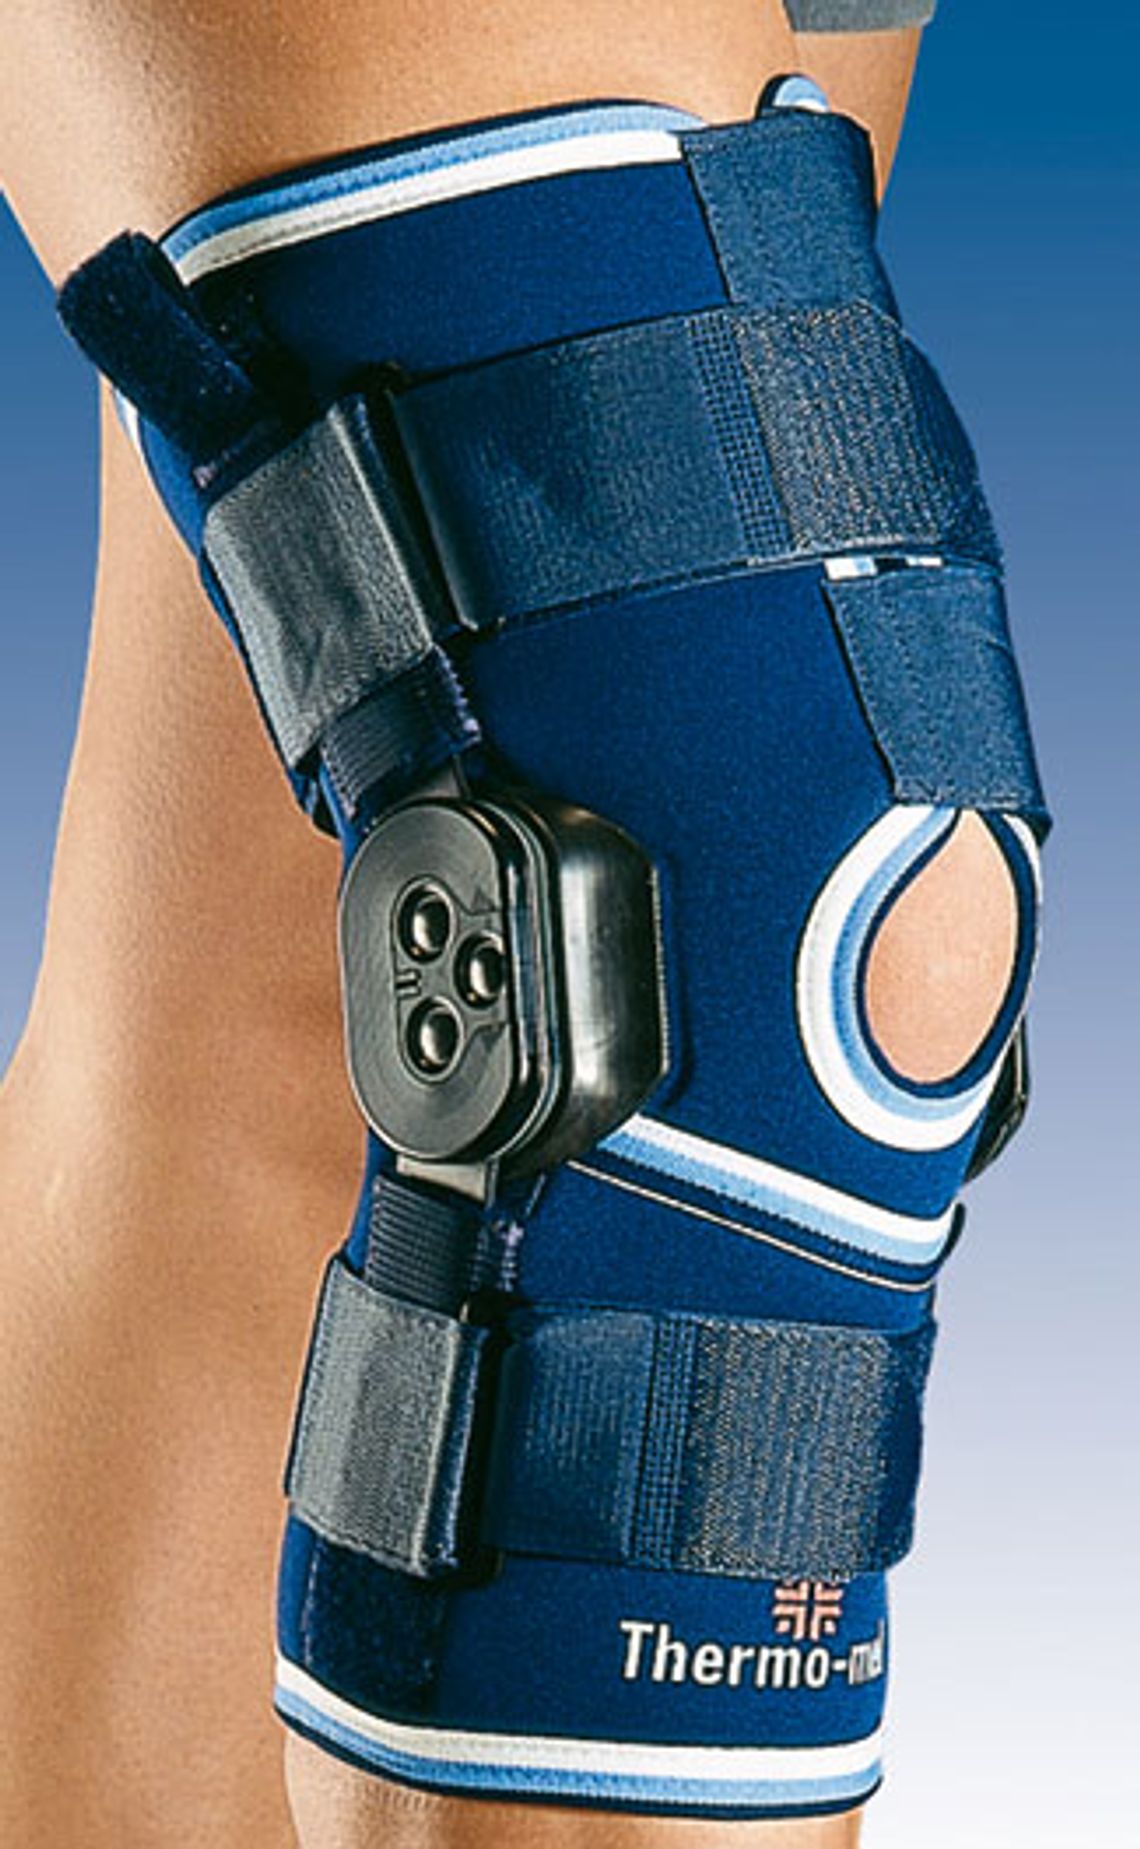 Orteza stawu kolanowego z ruchomym stawem kolanowym z regulacją kąta zgięcia - Orliman